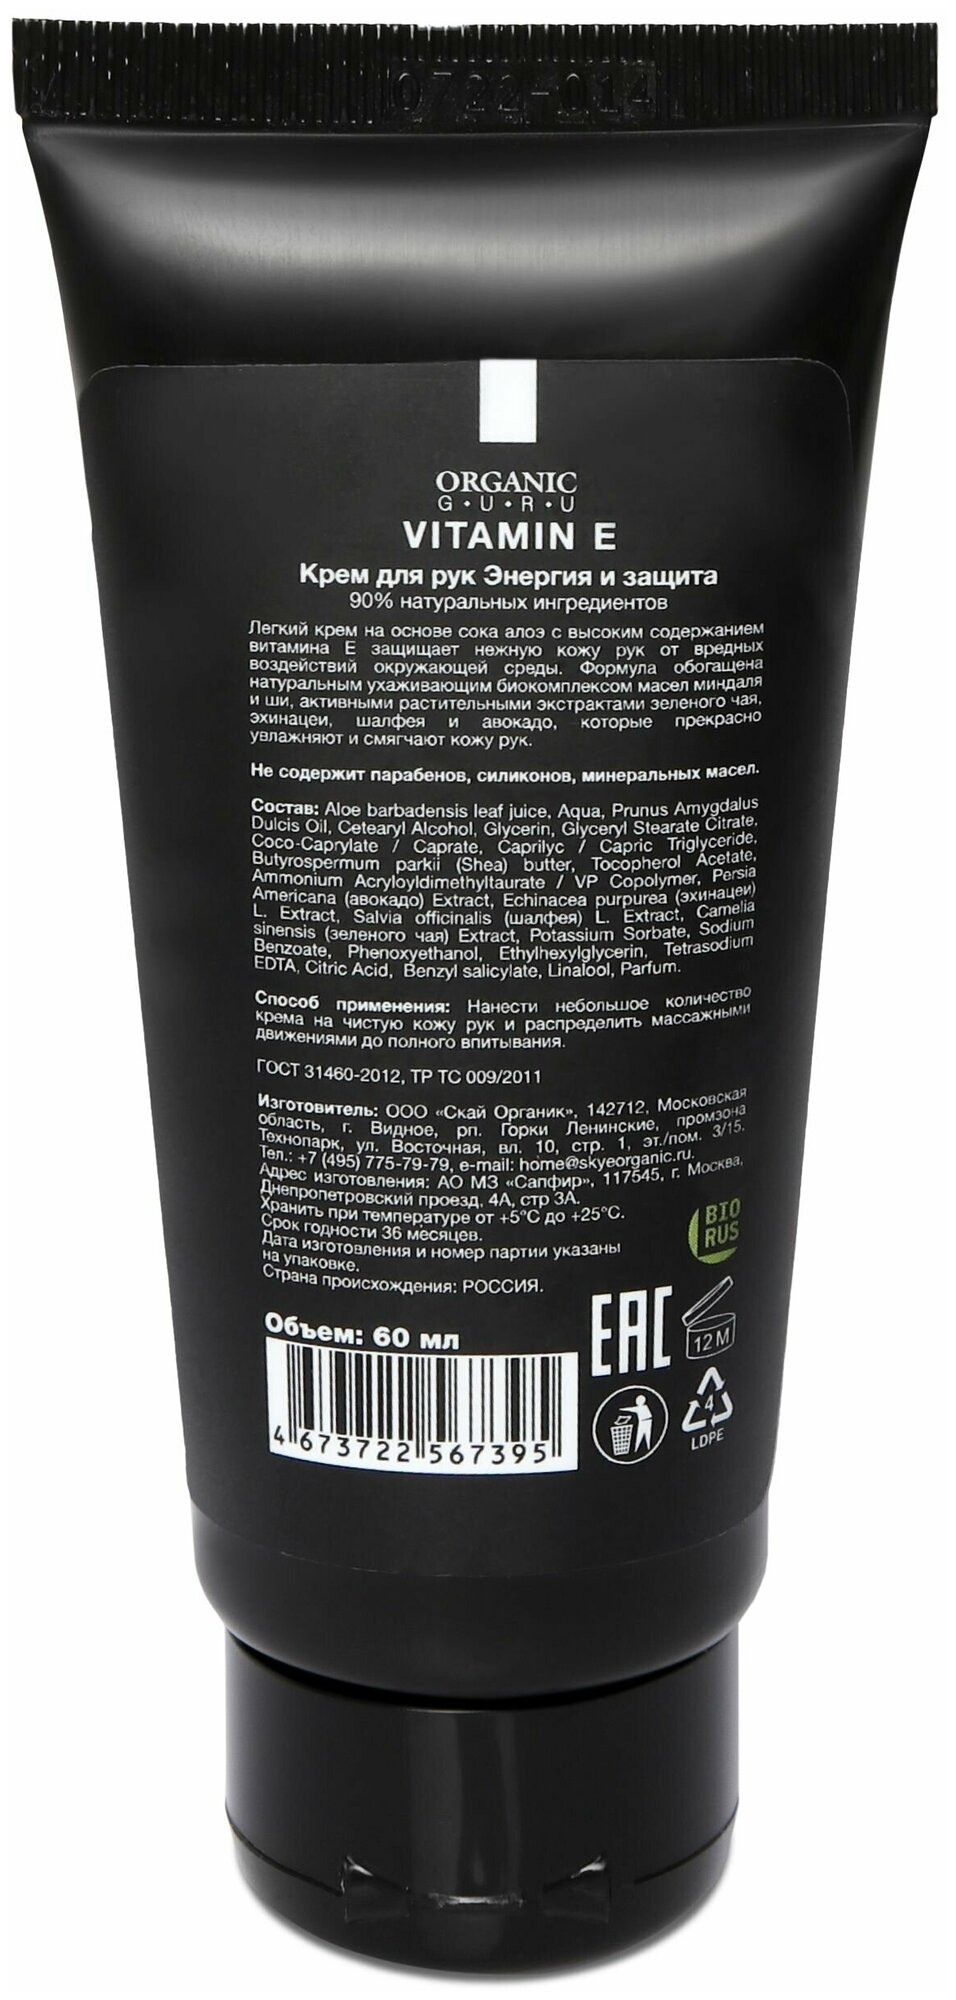 Organic Guru Крем для рук "Витамин Е" Энергия и защита, 60 мл. Уходовый крем "Vitamin E" Органик Гуру